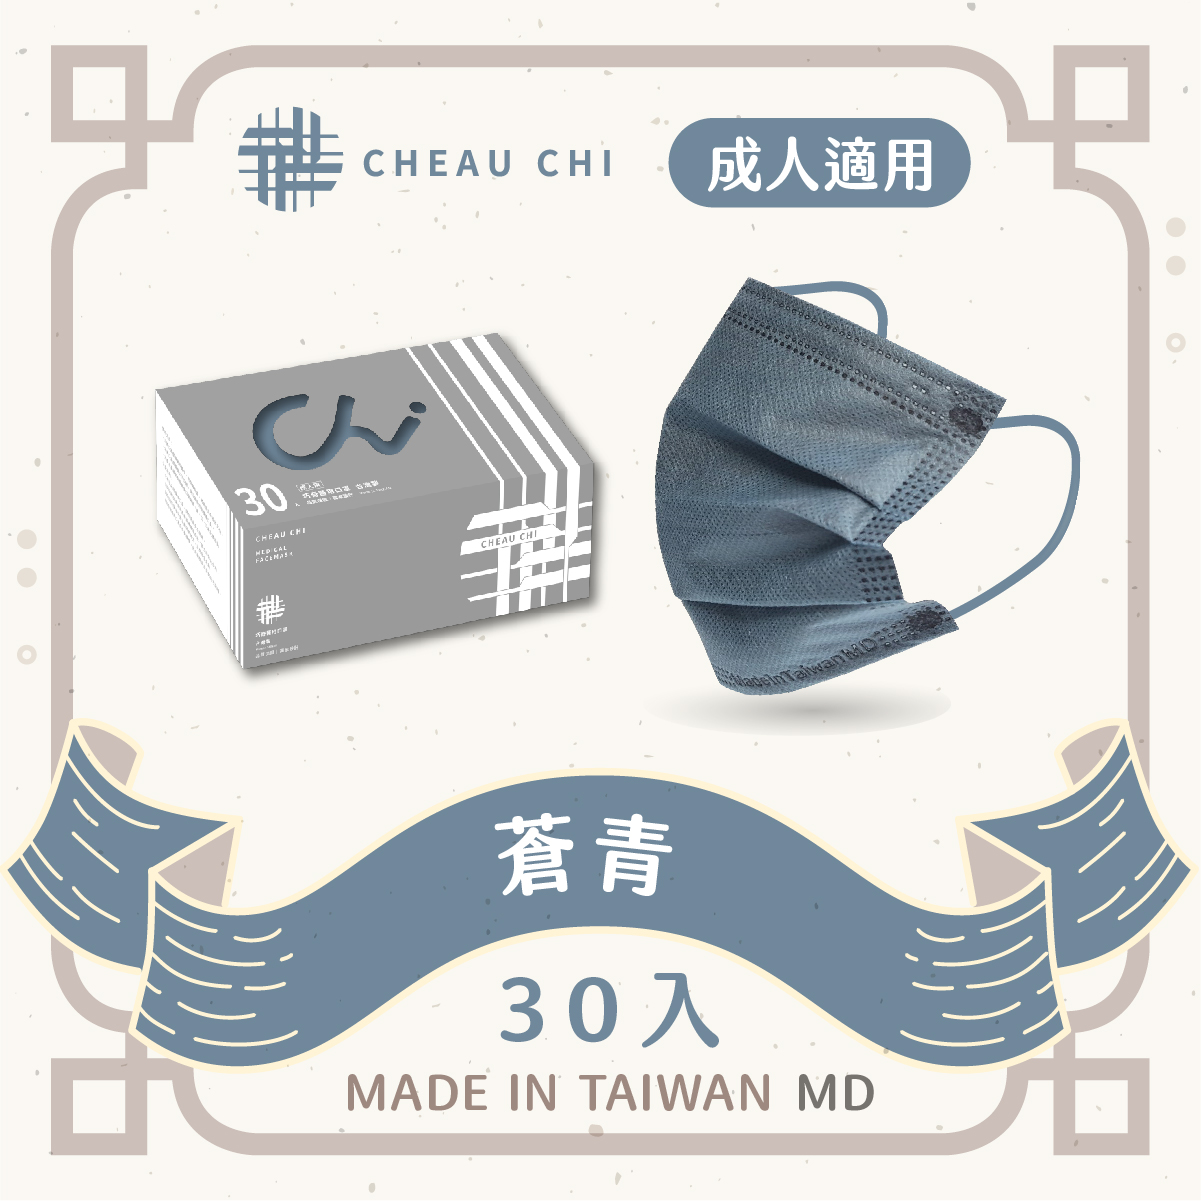 【巧奇】成人醫用口罩 30片入-霧灰滿版系列【蒼青】-台灣製 MD雙鋼印